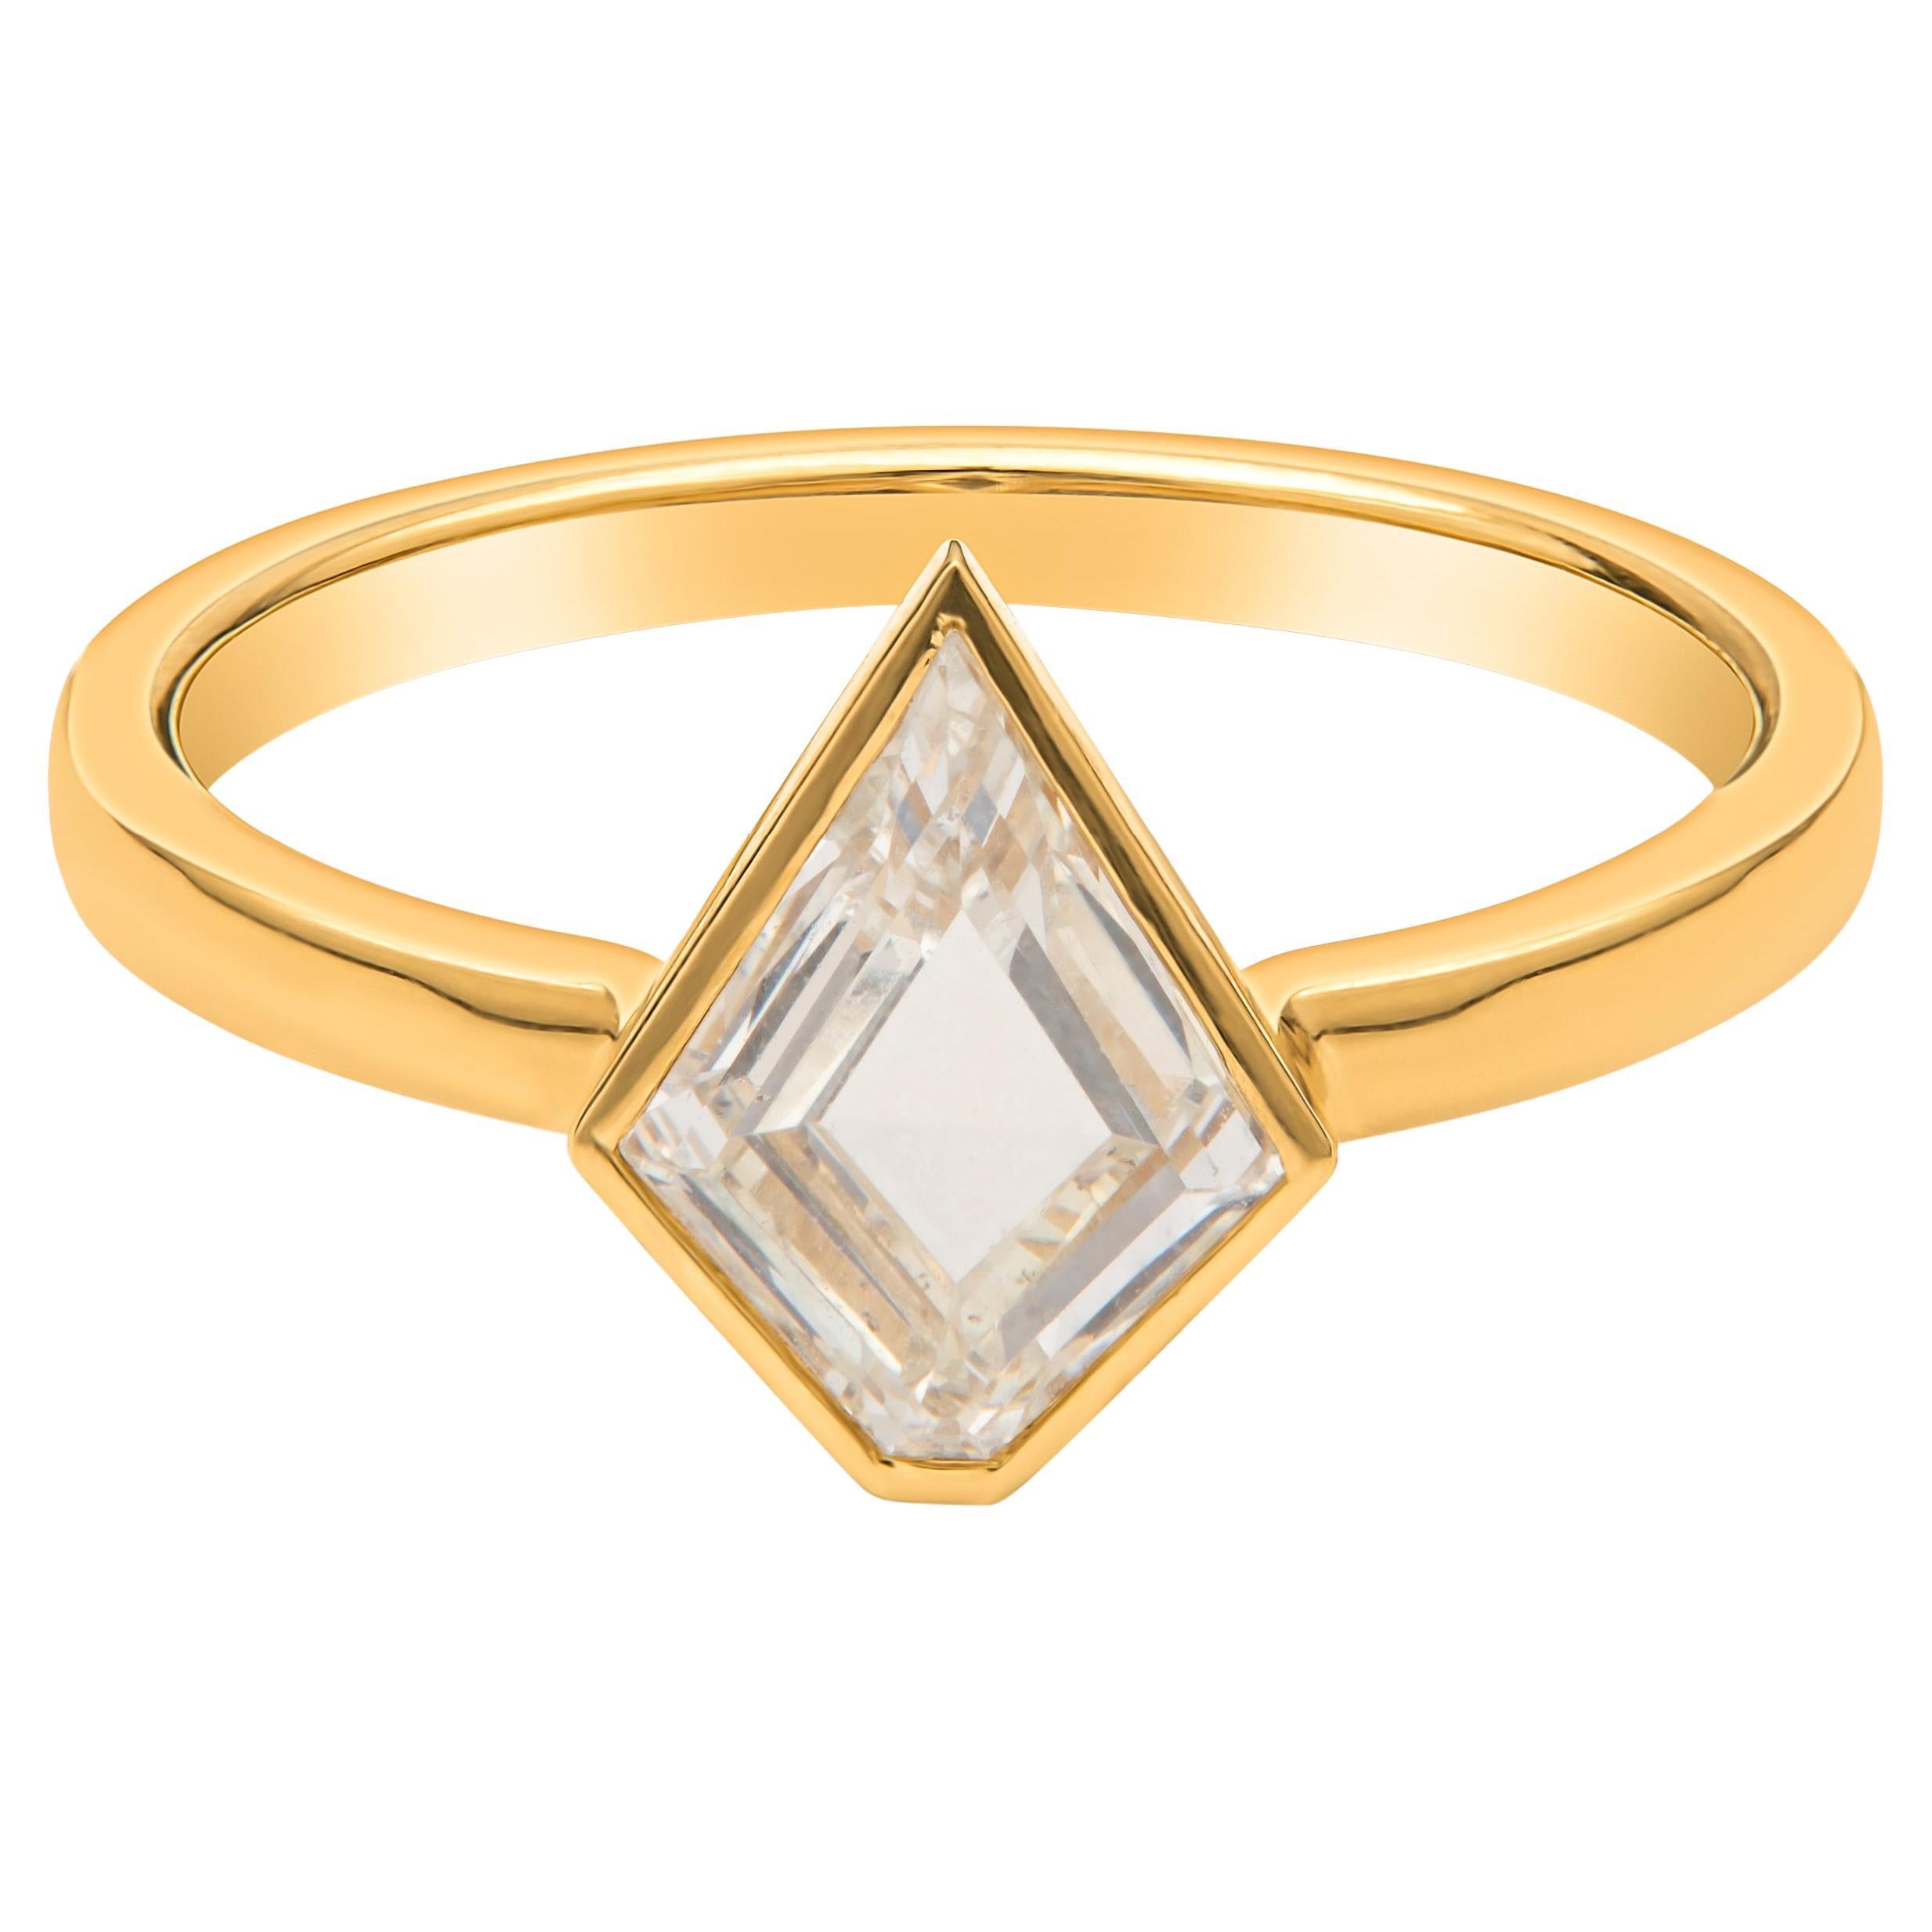 GIA Certified 1.03 Carat Kite Shaped Natural Diamond Ring